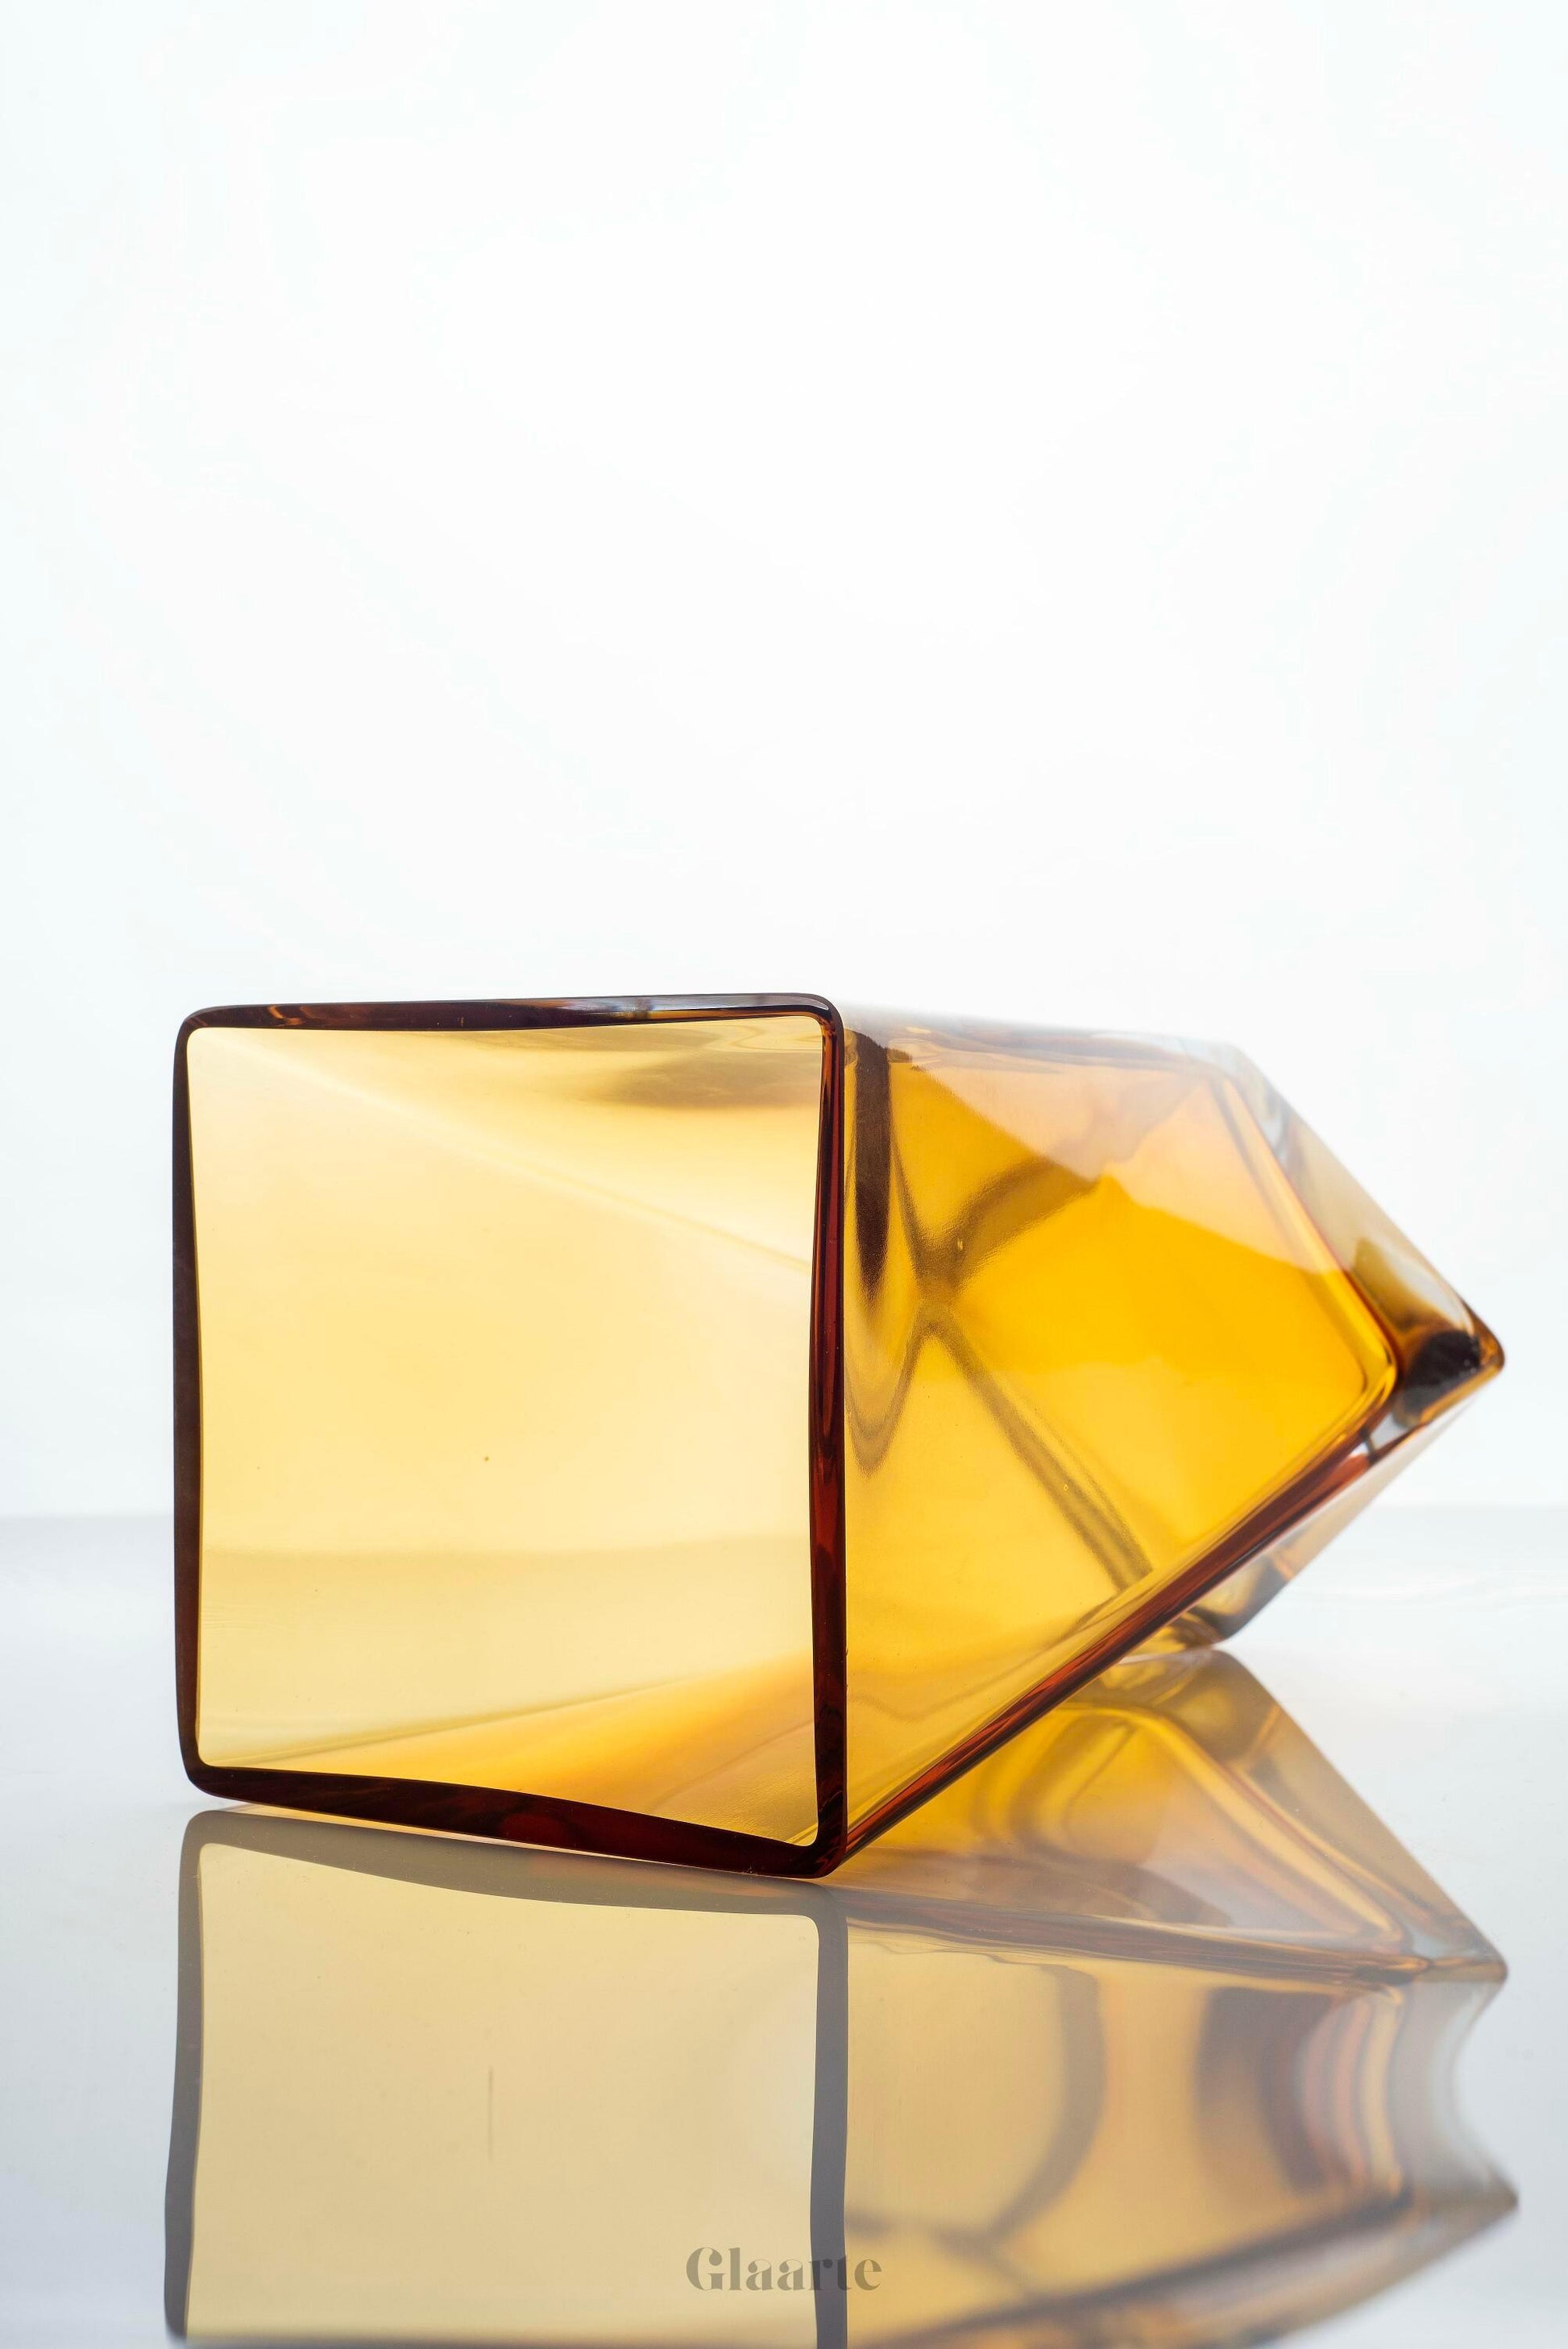 Szklany wazon dekoracyjny Torcido - Glaarte